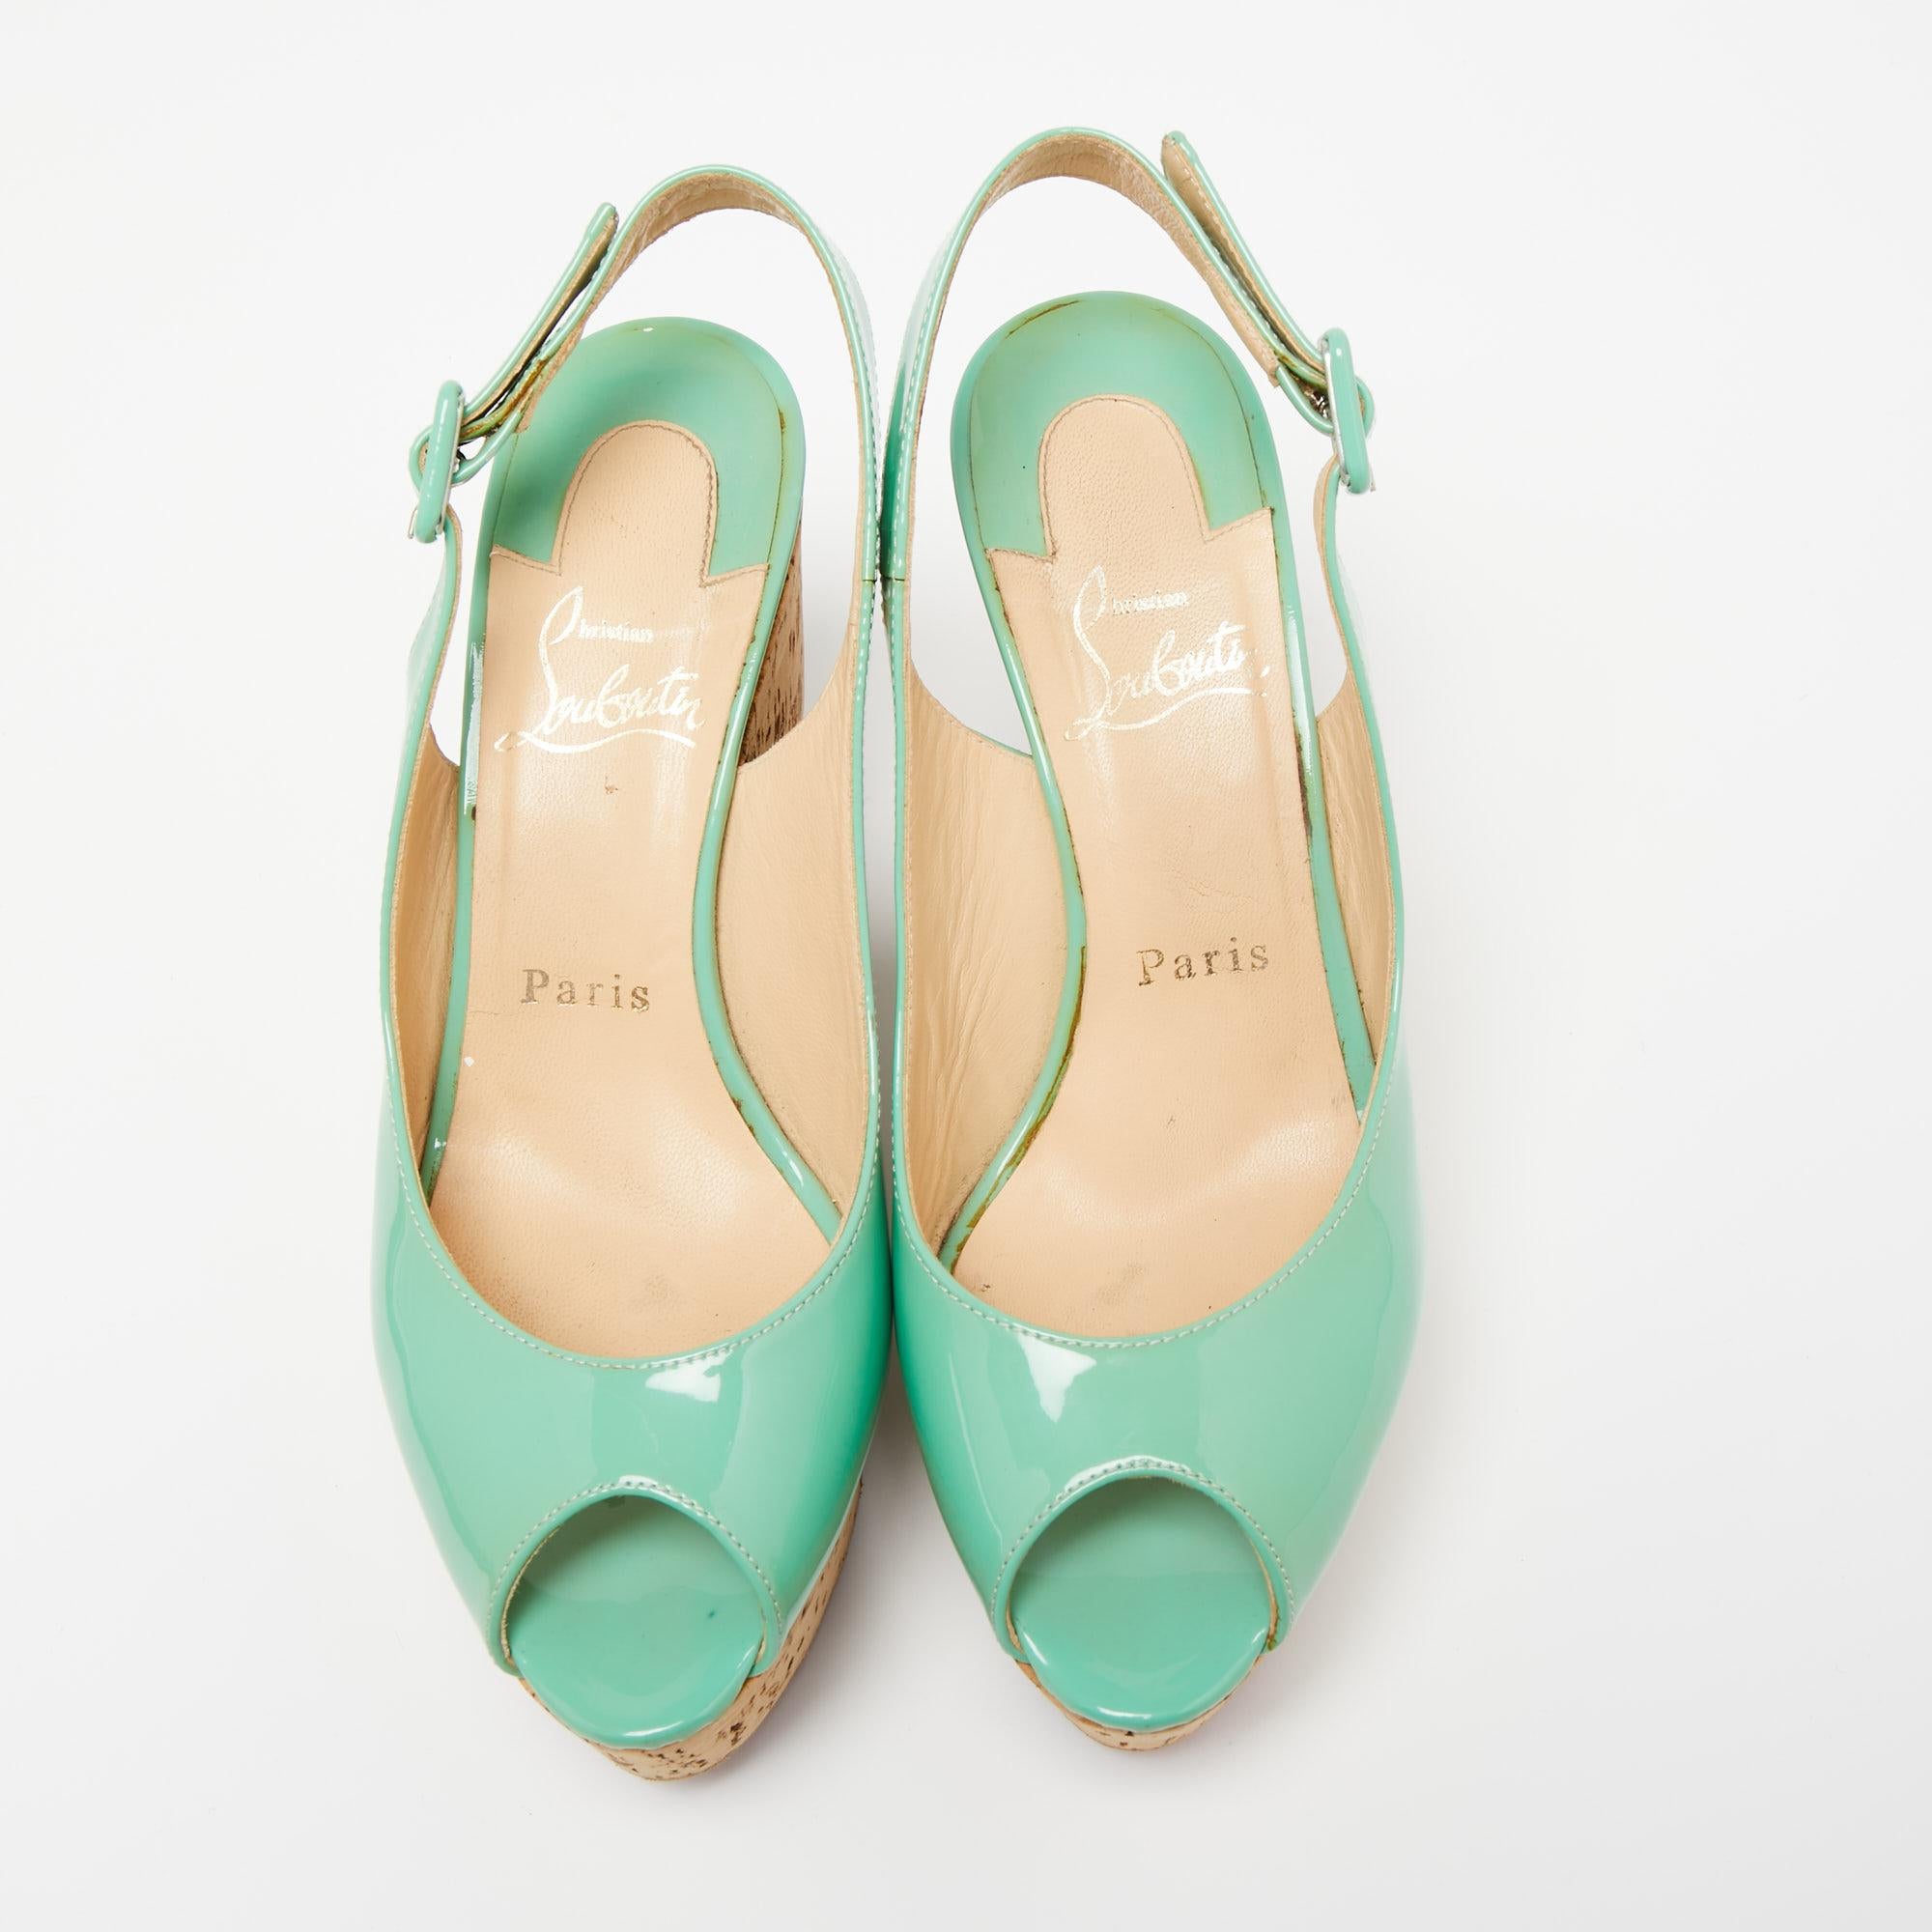 Ces sandales de Christian Louboutin vous donneront certainement une allure élégante et soignée ! Elles sont réalisées en cuir verni vert et présentent des talons compensés, un escarpin à boucle et des bouts pointus. Vous êtes magnifique en portant